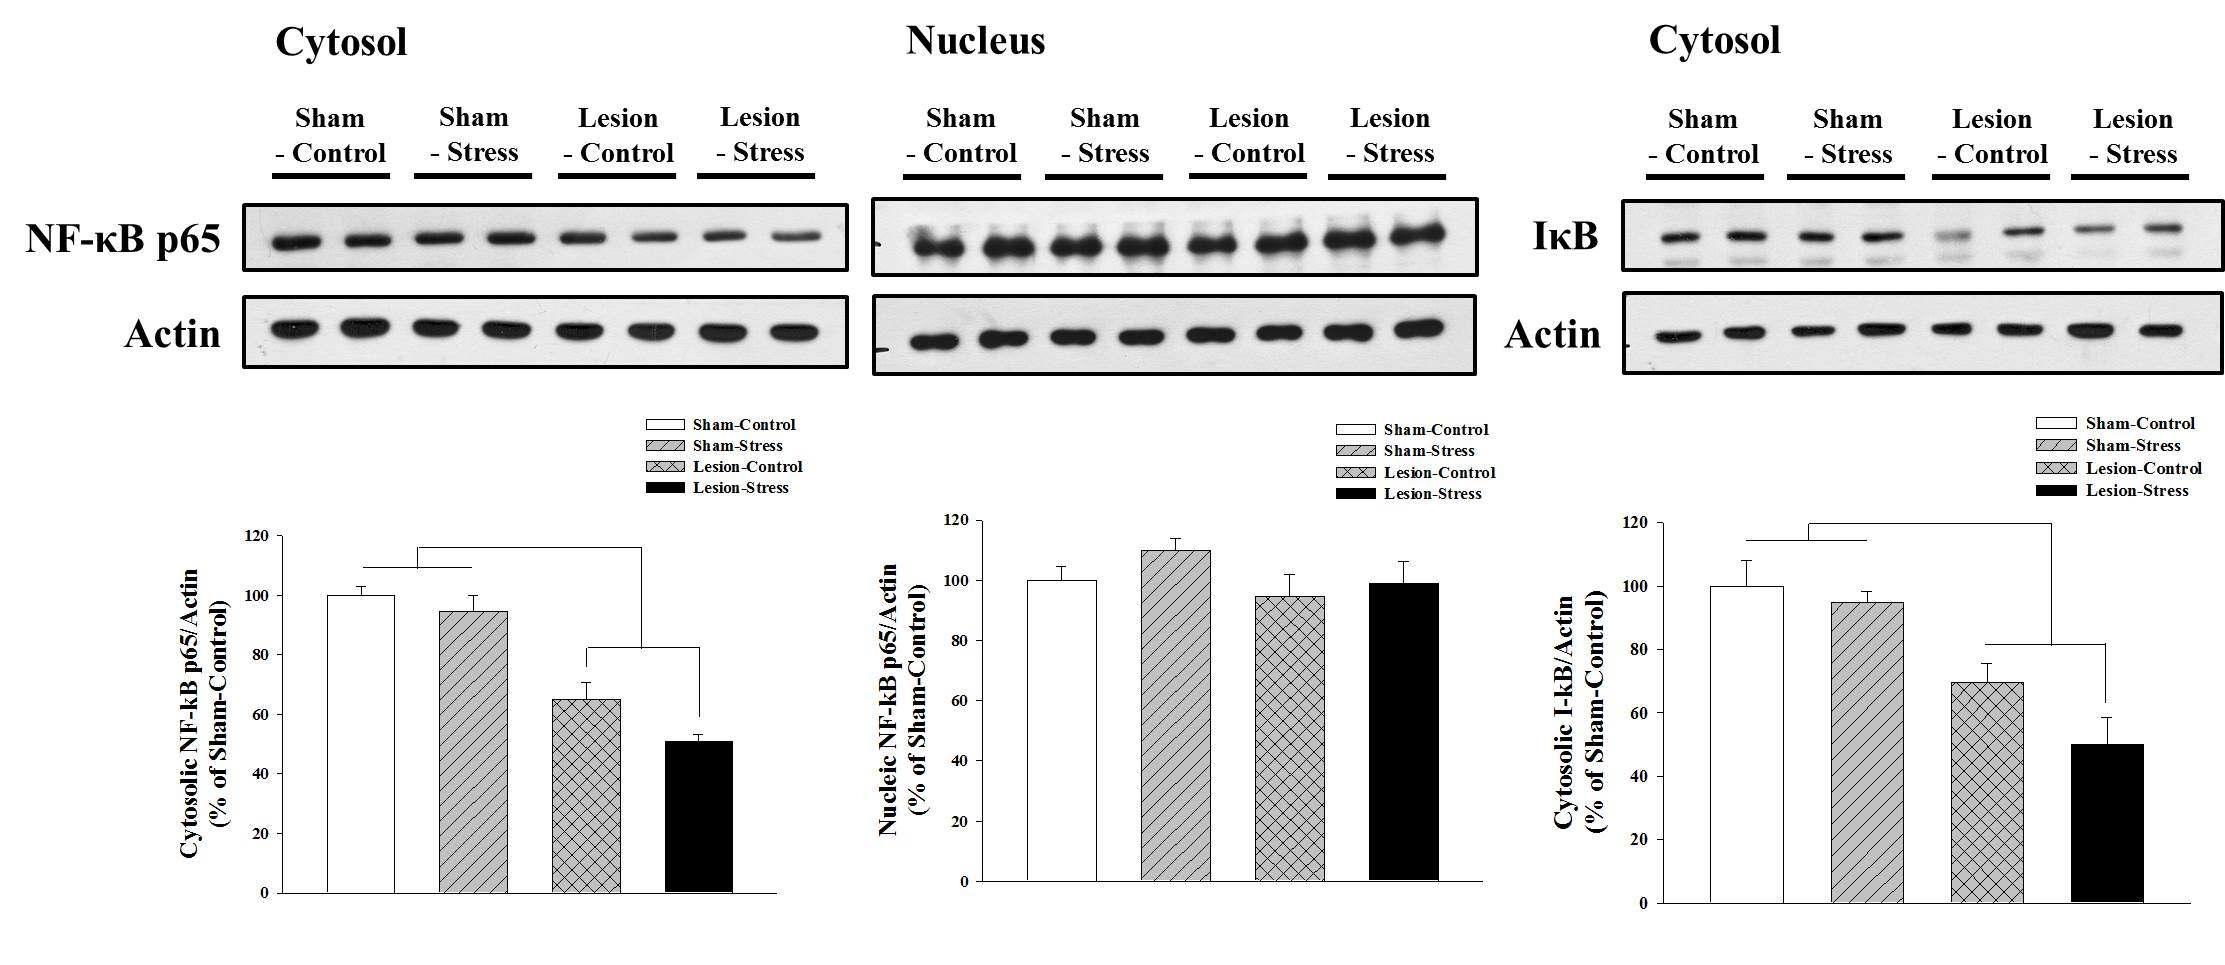 해마의 NF kappaB signaling은 nucleus에서는 변화가 없었지만 cytosol에서는 IkappaB와 함께 sham group에 비해 lesion group에서 신호가 크게 줄어듬